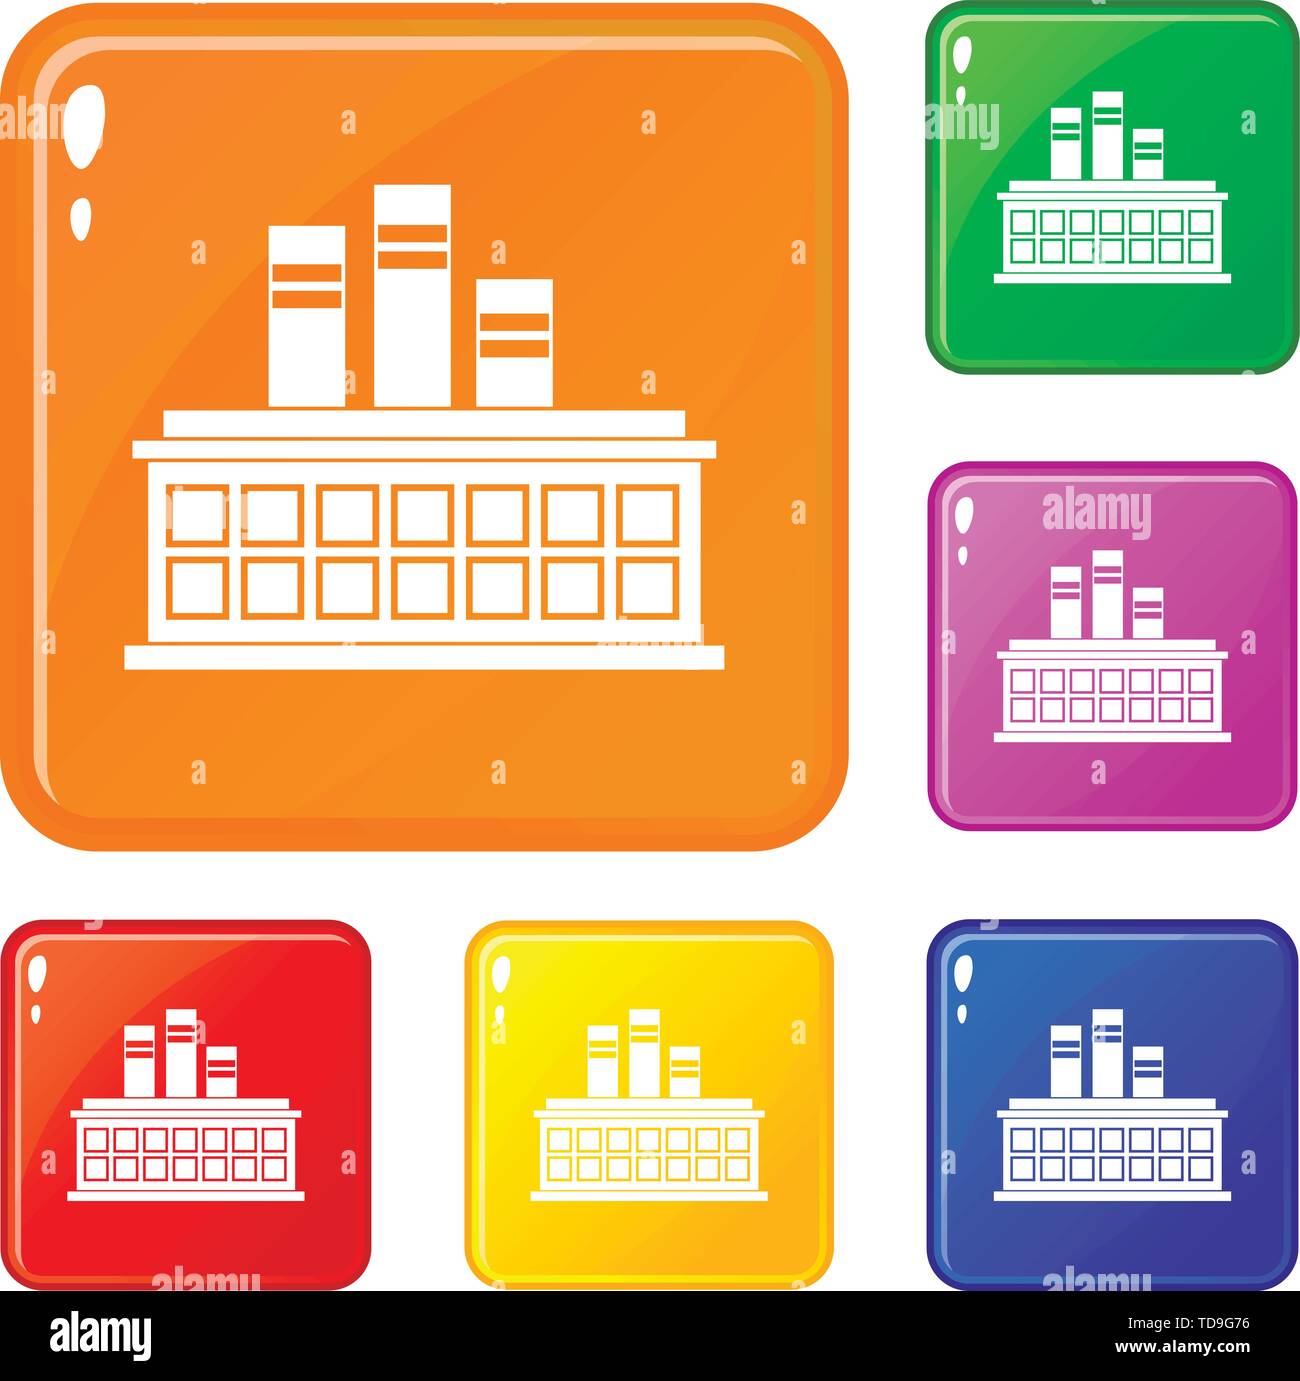 Raffinerie de pétrole icons set vector color Illustration de Vecteur